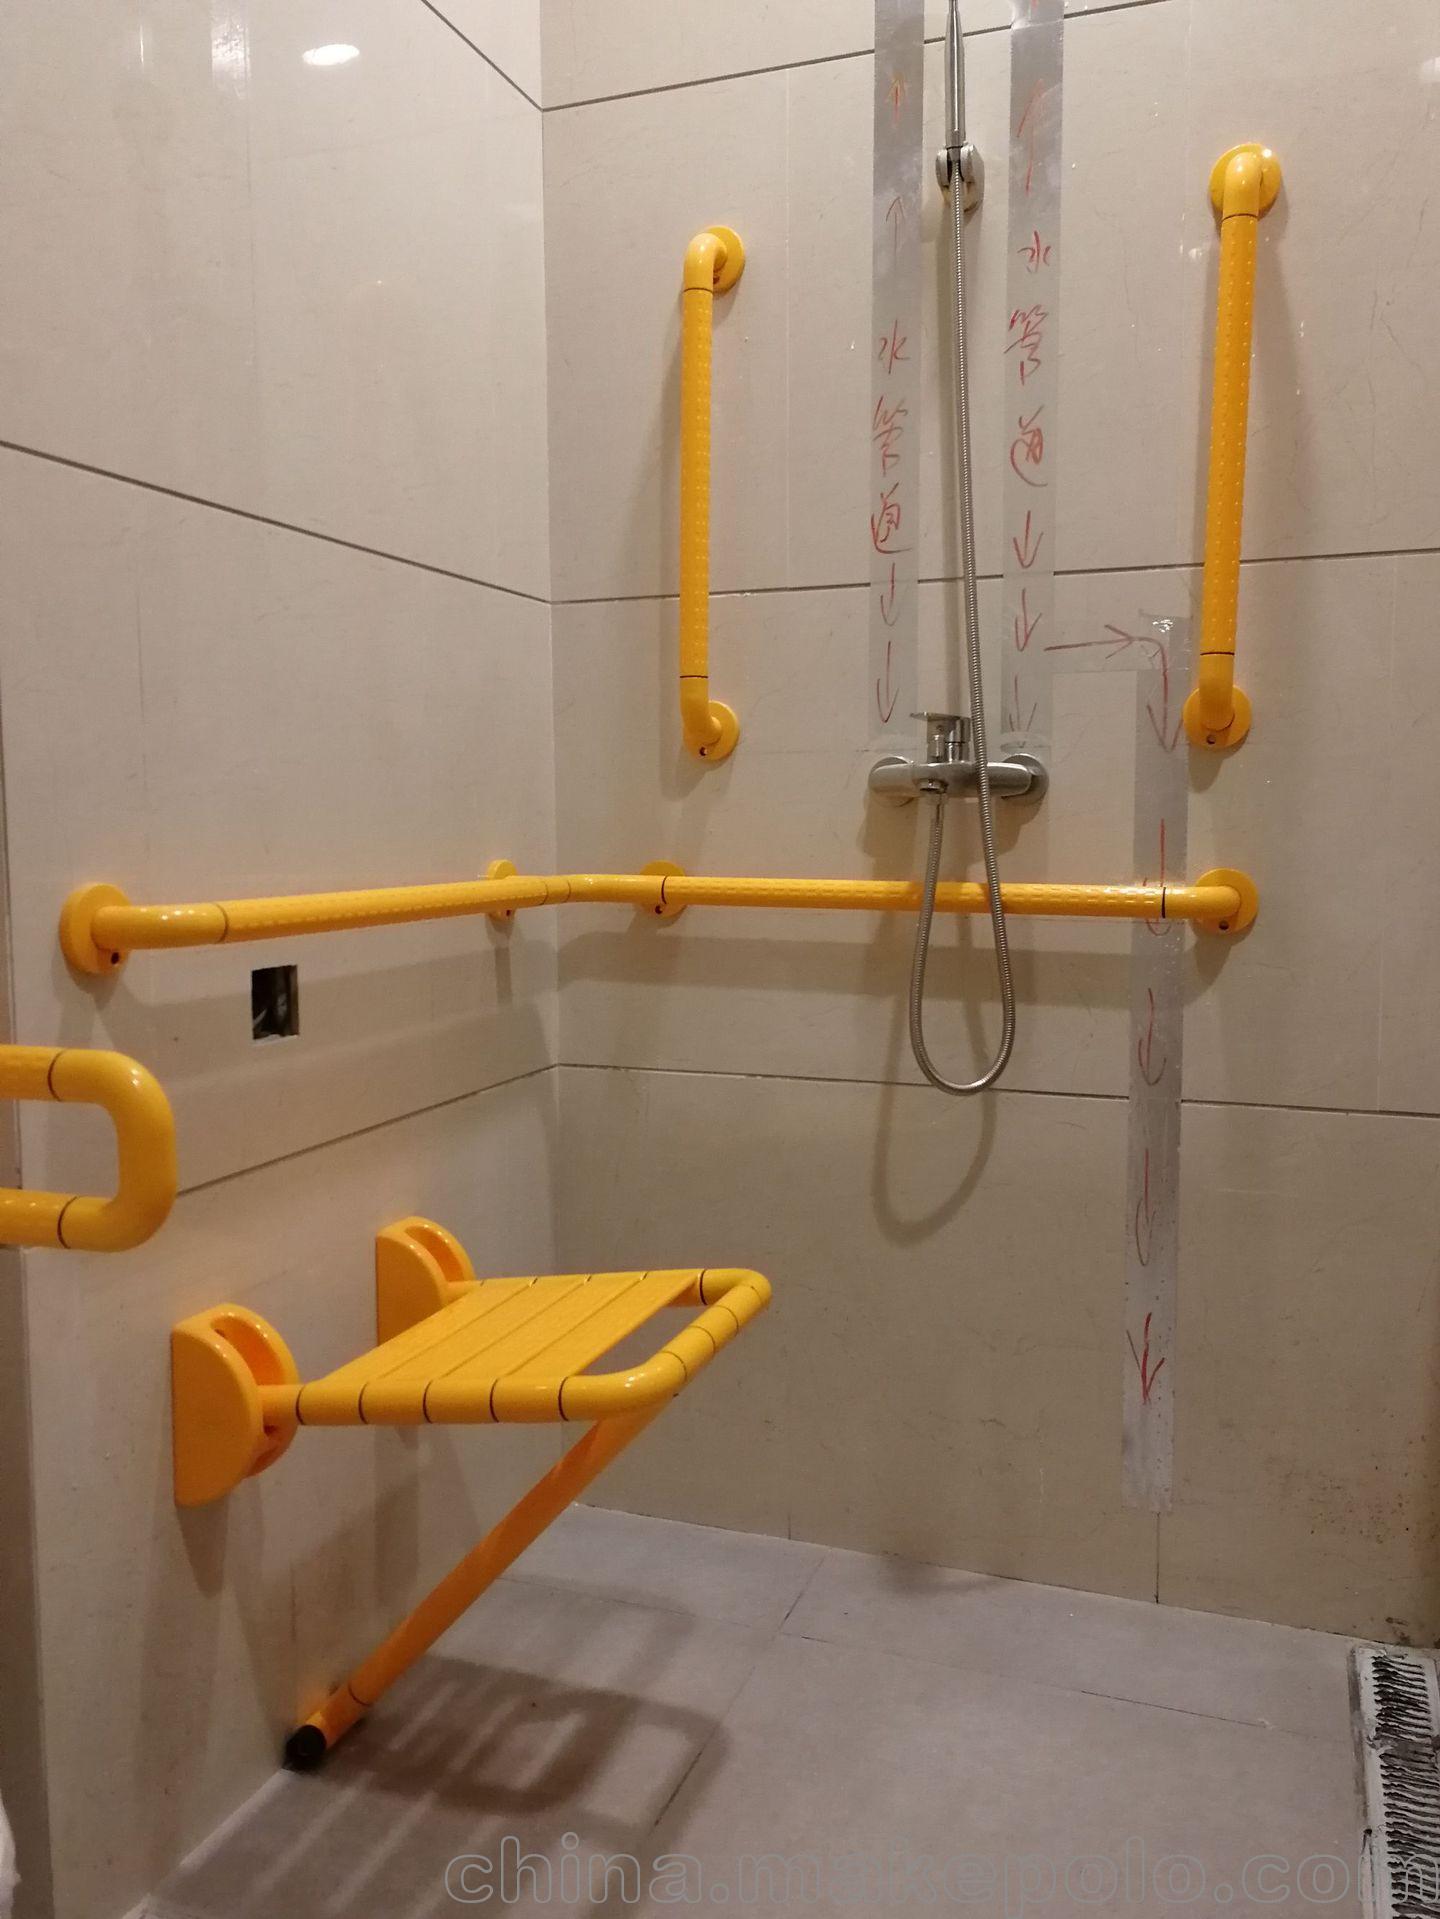 重庆卫浴扶手厂家a卫生间无障碍折叠浴凳a 残疾人浴椅